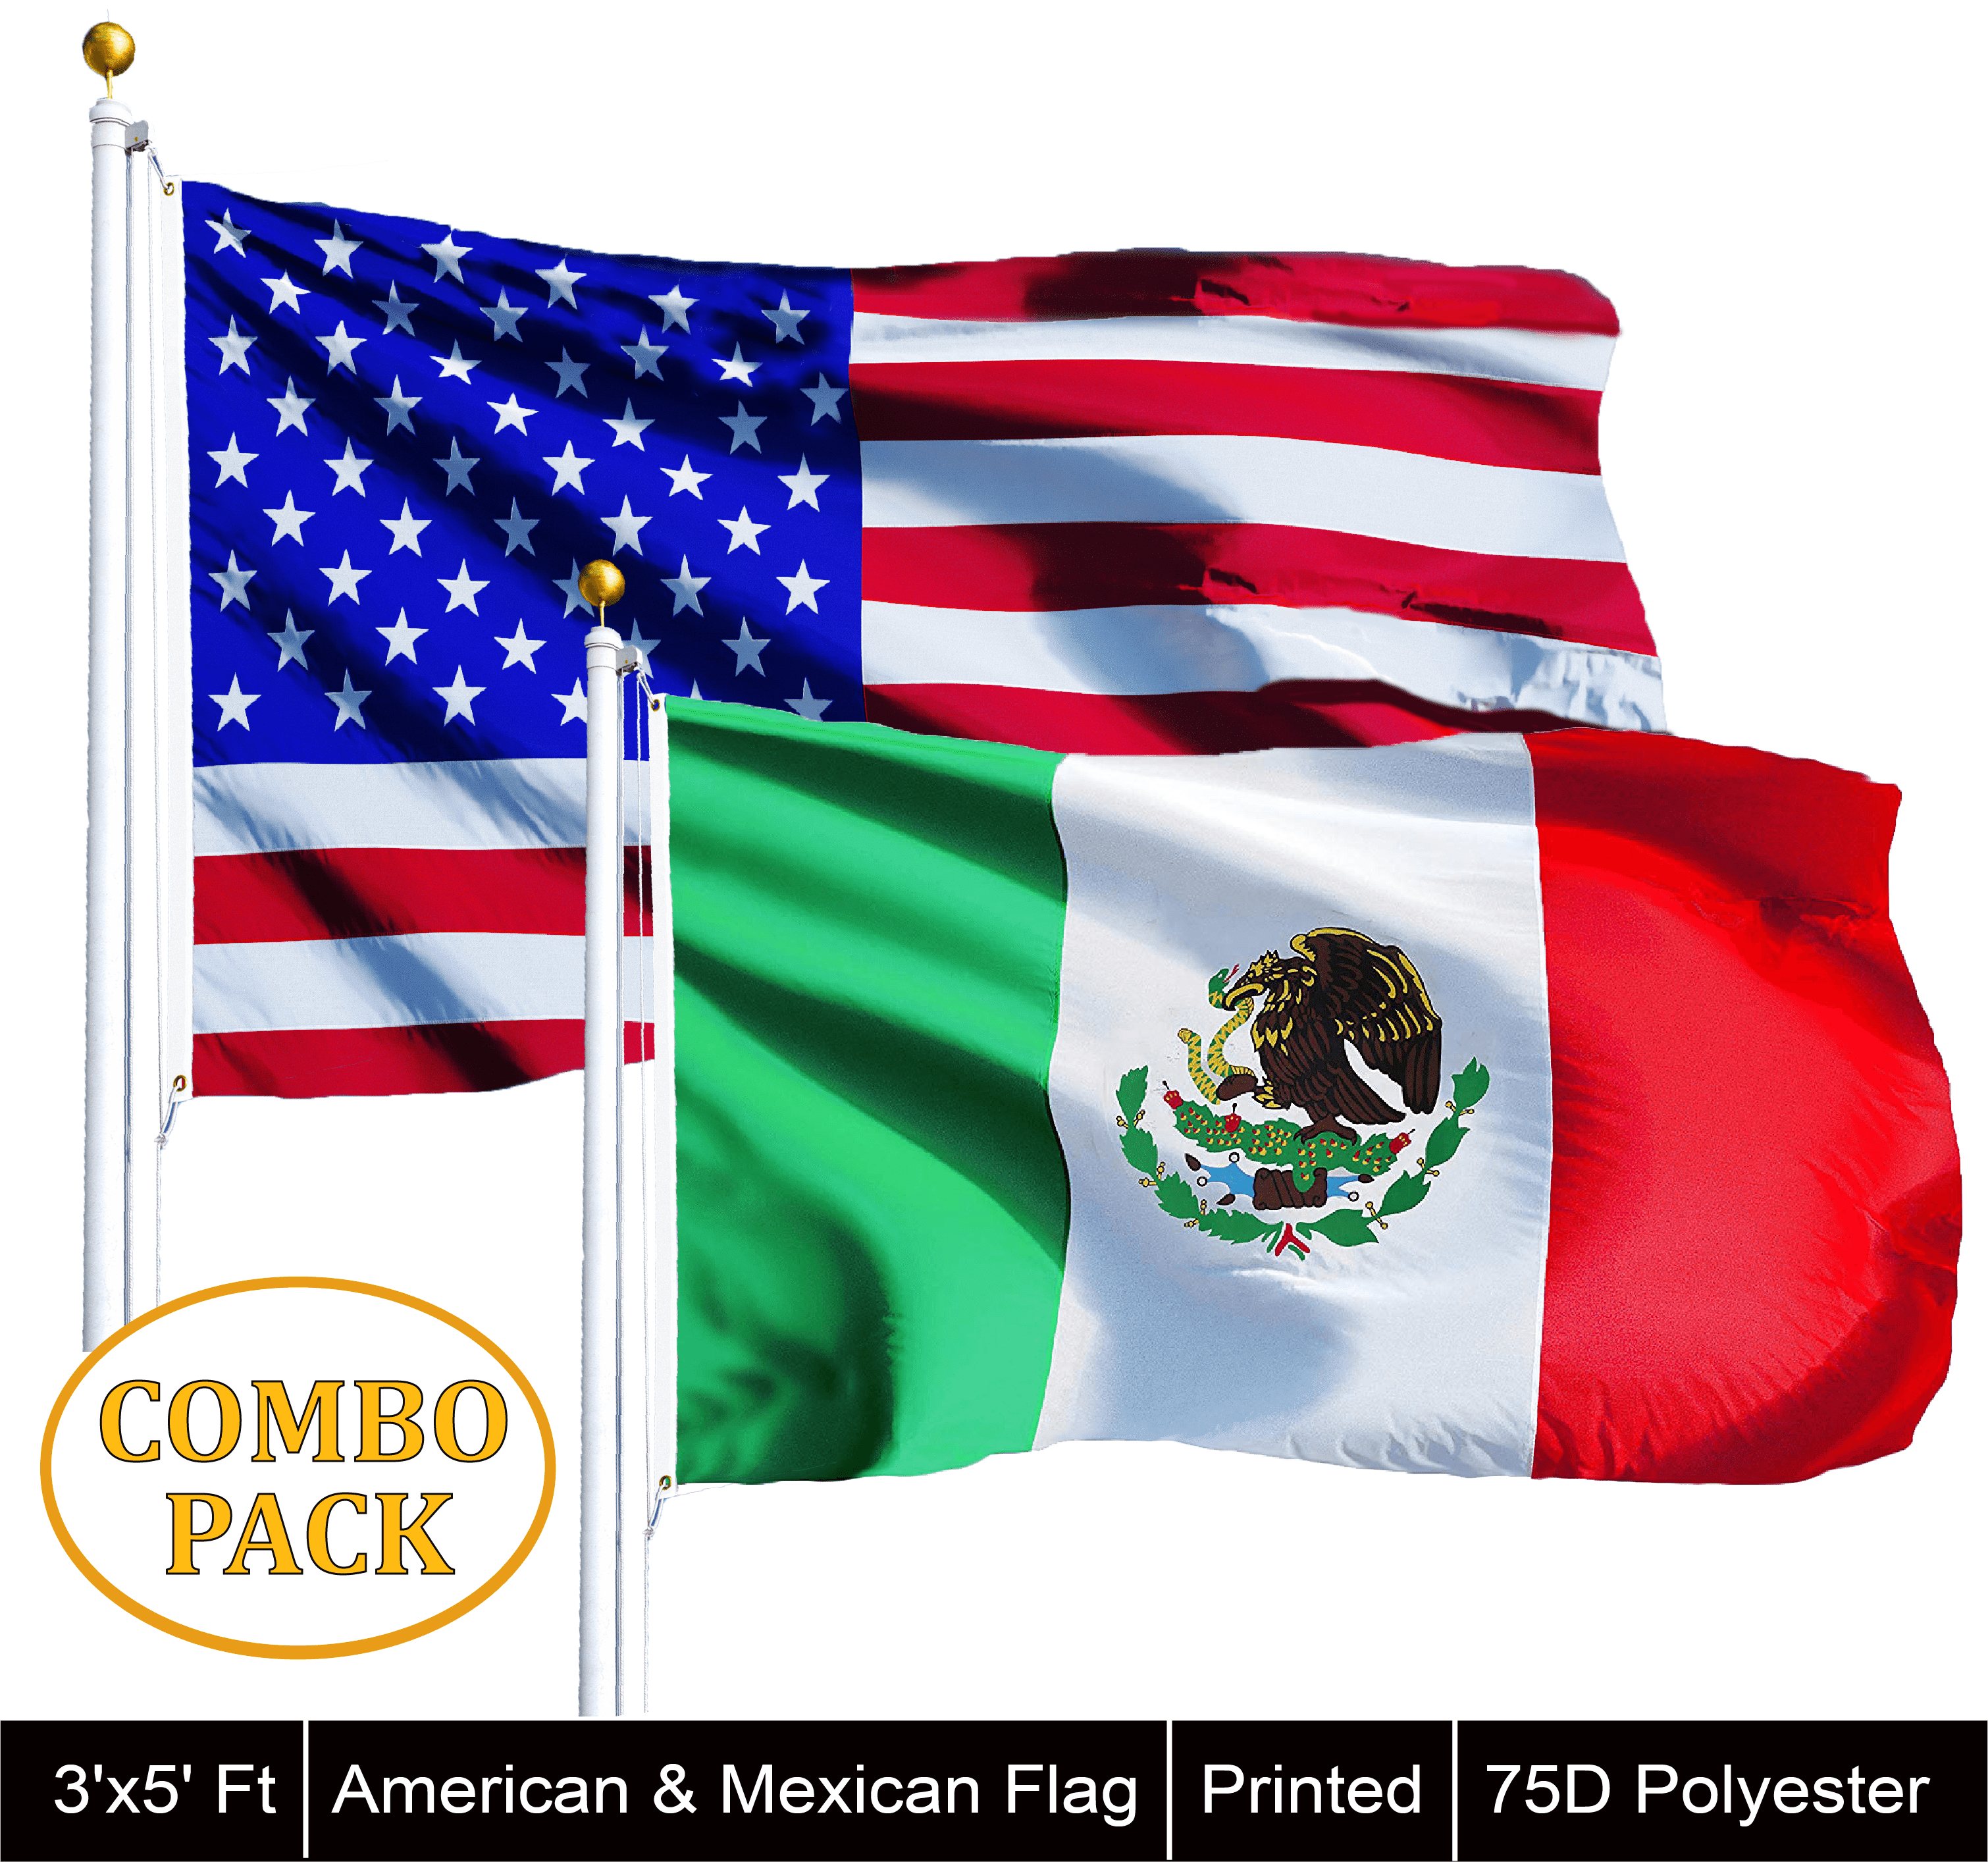 Mexiko Stick Flagge 5 x 8 Zoll Handgehaltene Stick Flaggen mit Speerspitze Anley? Mexikanische 5x8 Zoll Handheld Mini Flagge mit 12 weißem 1 Dutzend festem Mast